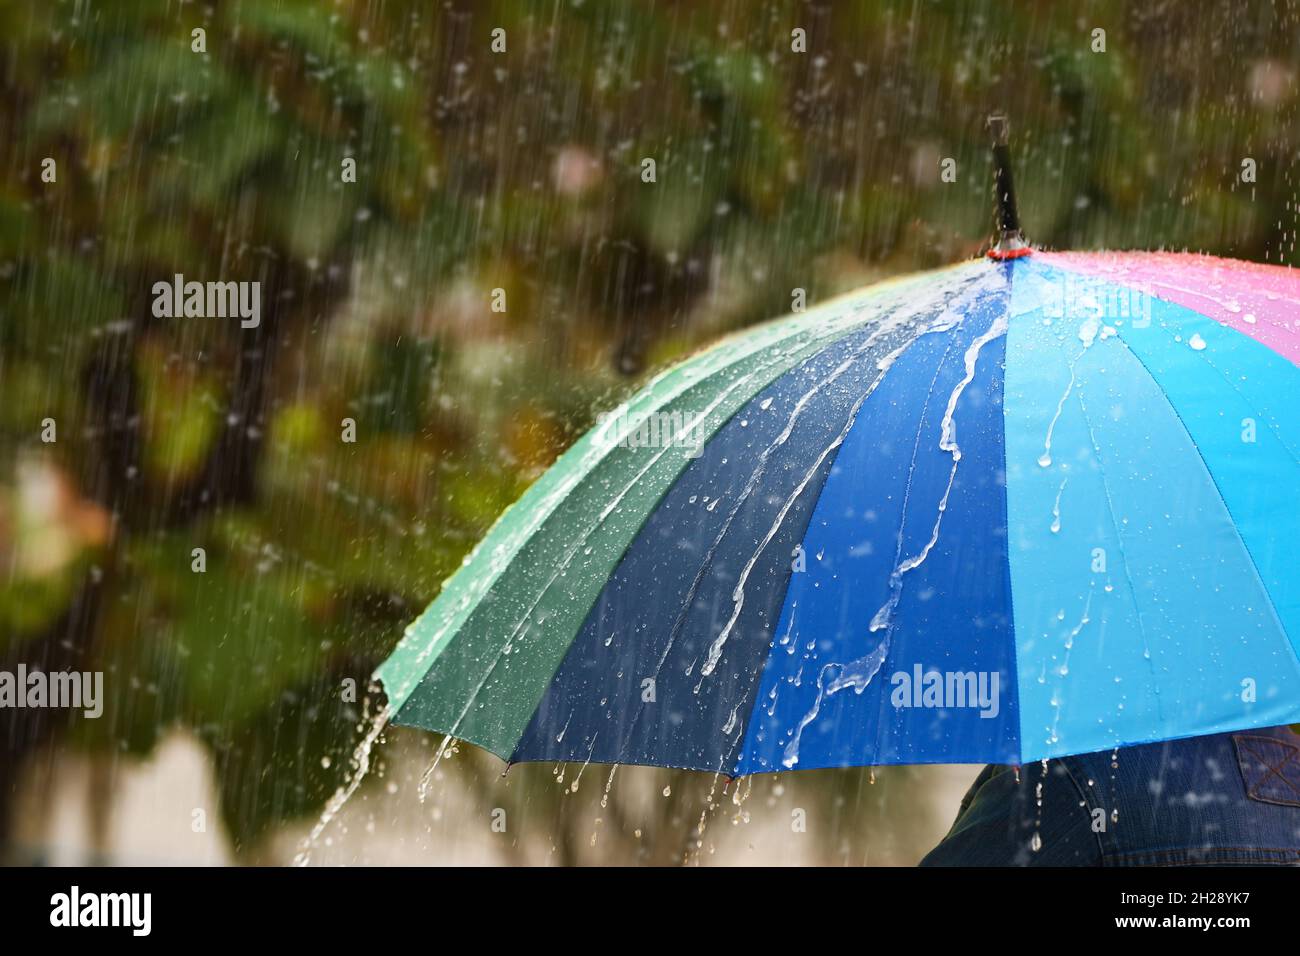 con sombrilla brillante bajo la lluvia en cerca de stock - Alamy